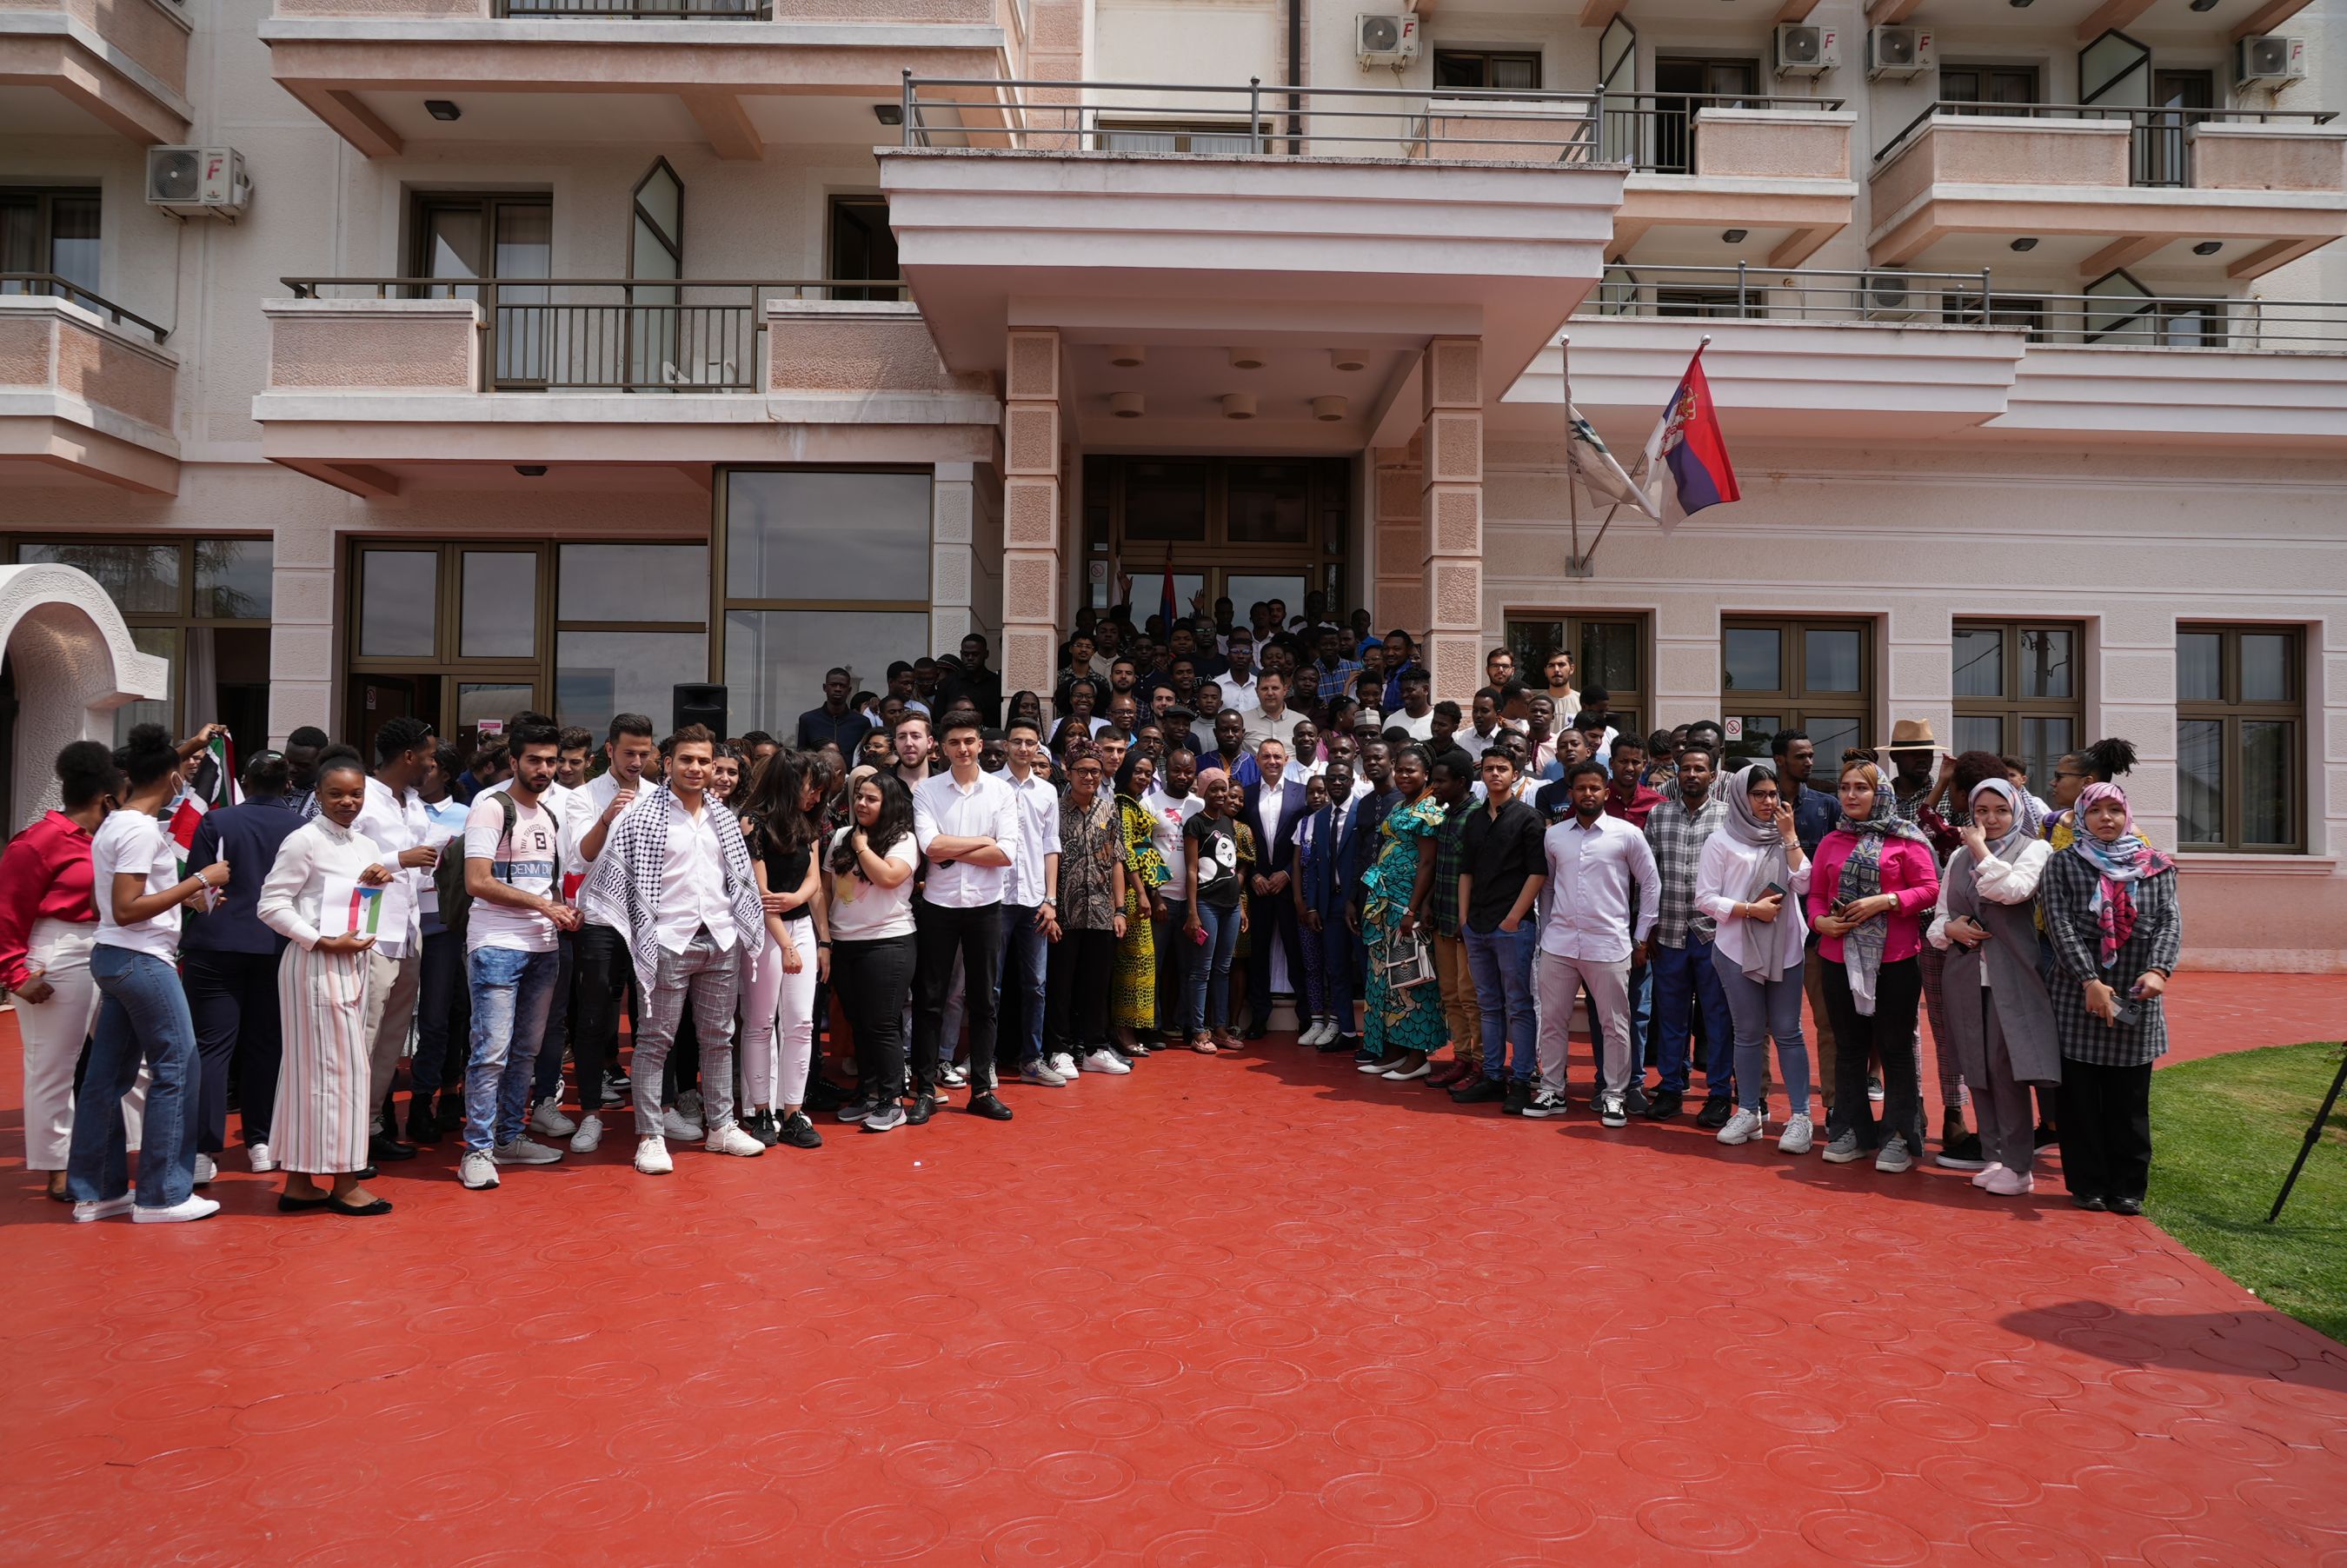 Ministar Vulin obišao je danas u studentskom odmaralištu na Avali buduće studente koji dolaze iz zemalјa članica Pokreta nesvrstanih